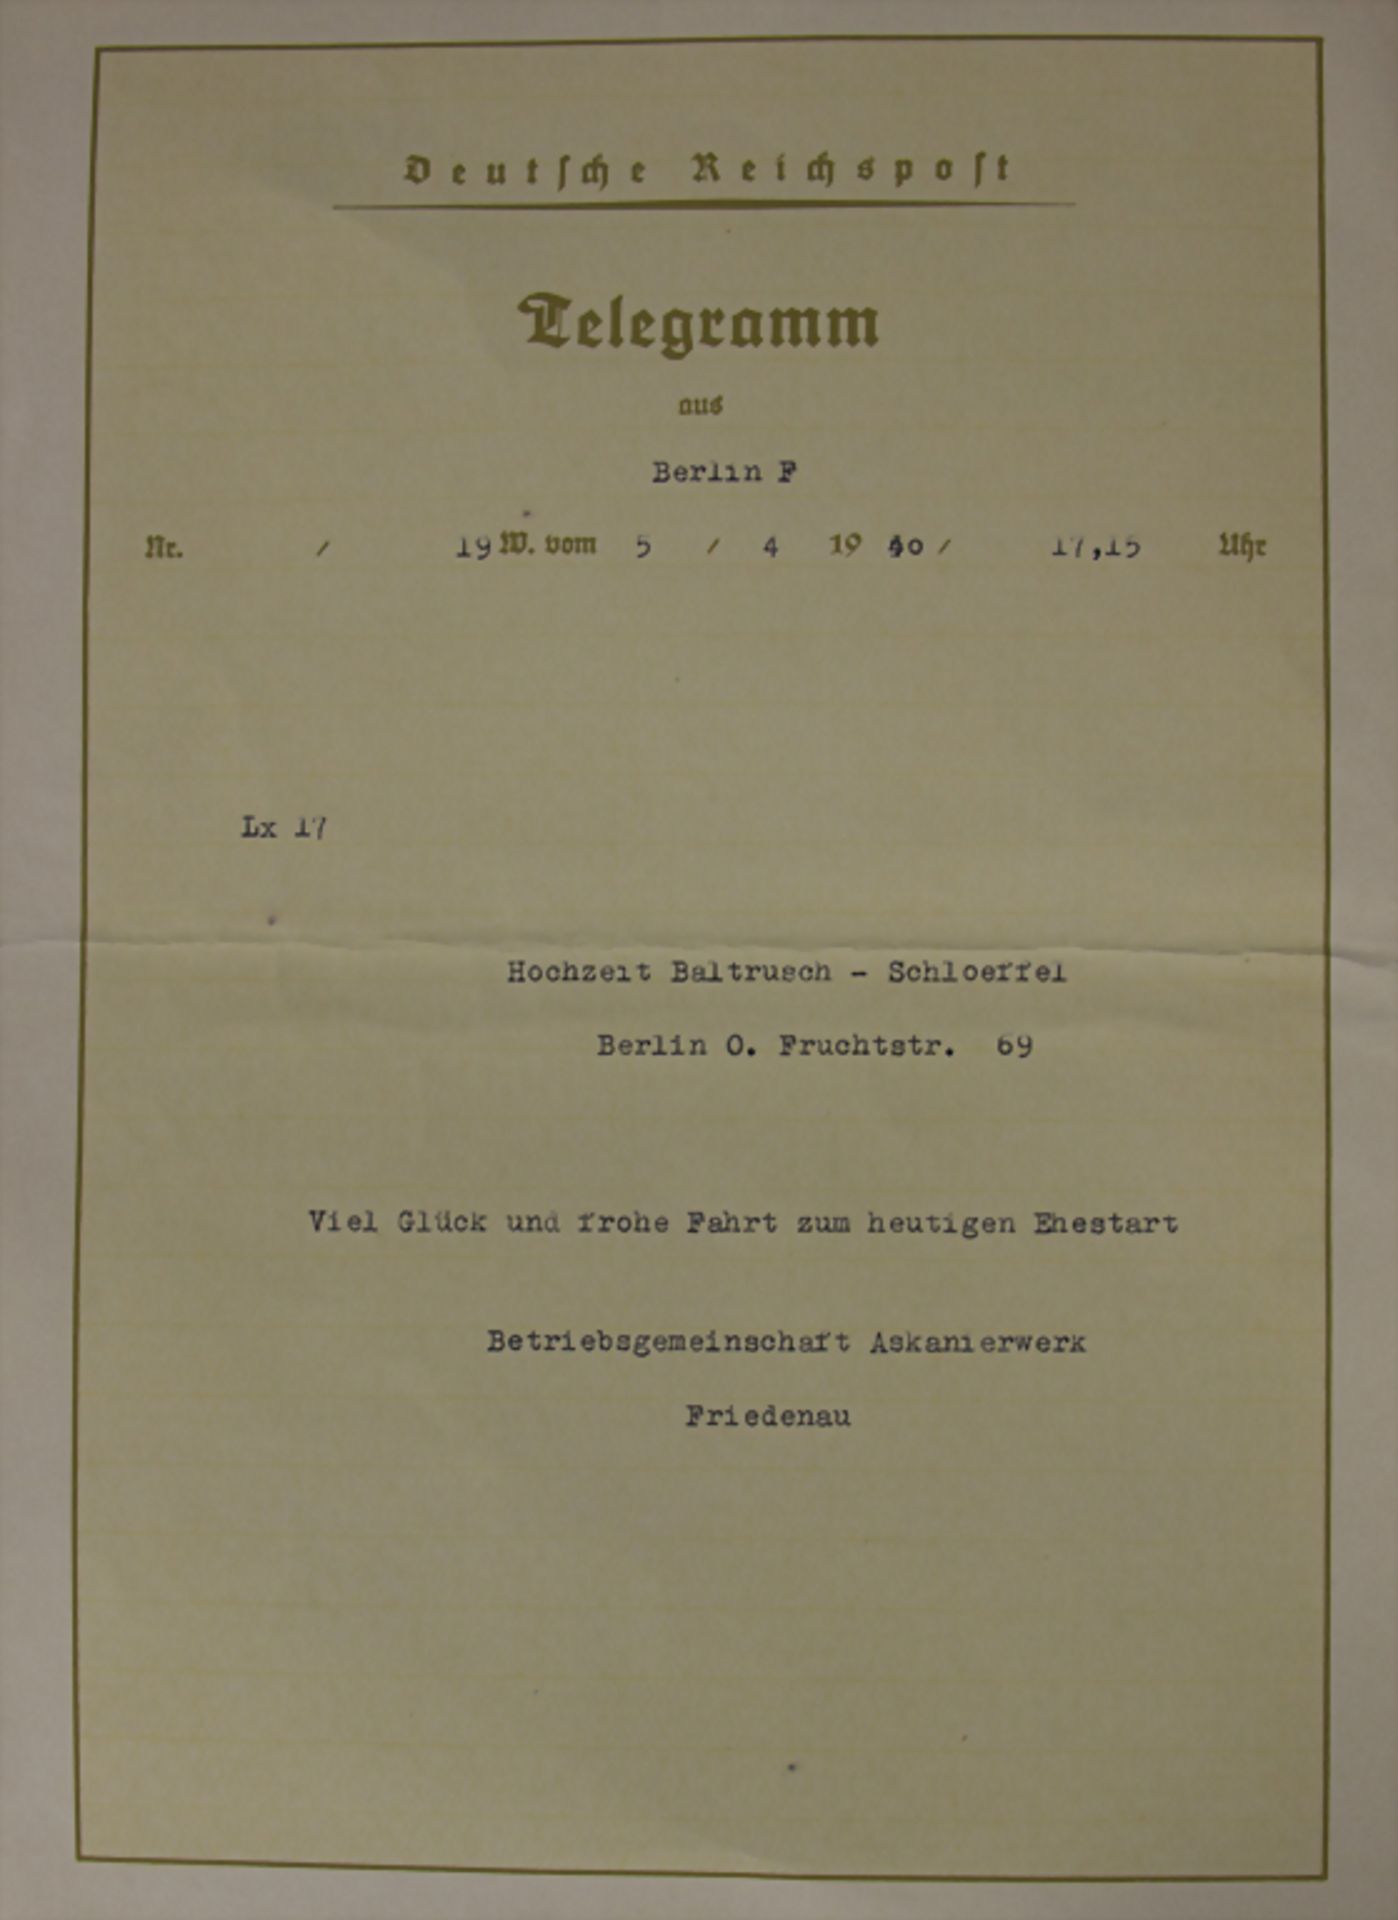 Reichspost-Telegramm mit Propaganda-Motiv, Drittes Reich / Reichspost telegram with propaganda - Image 2 of 3